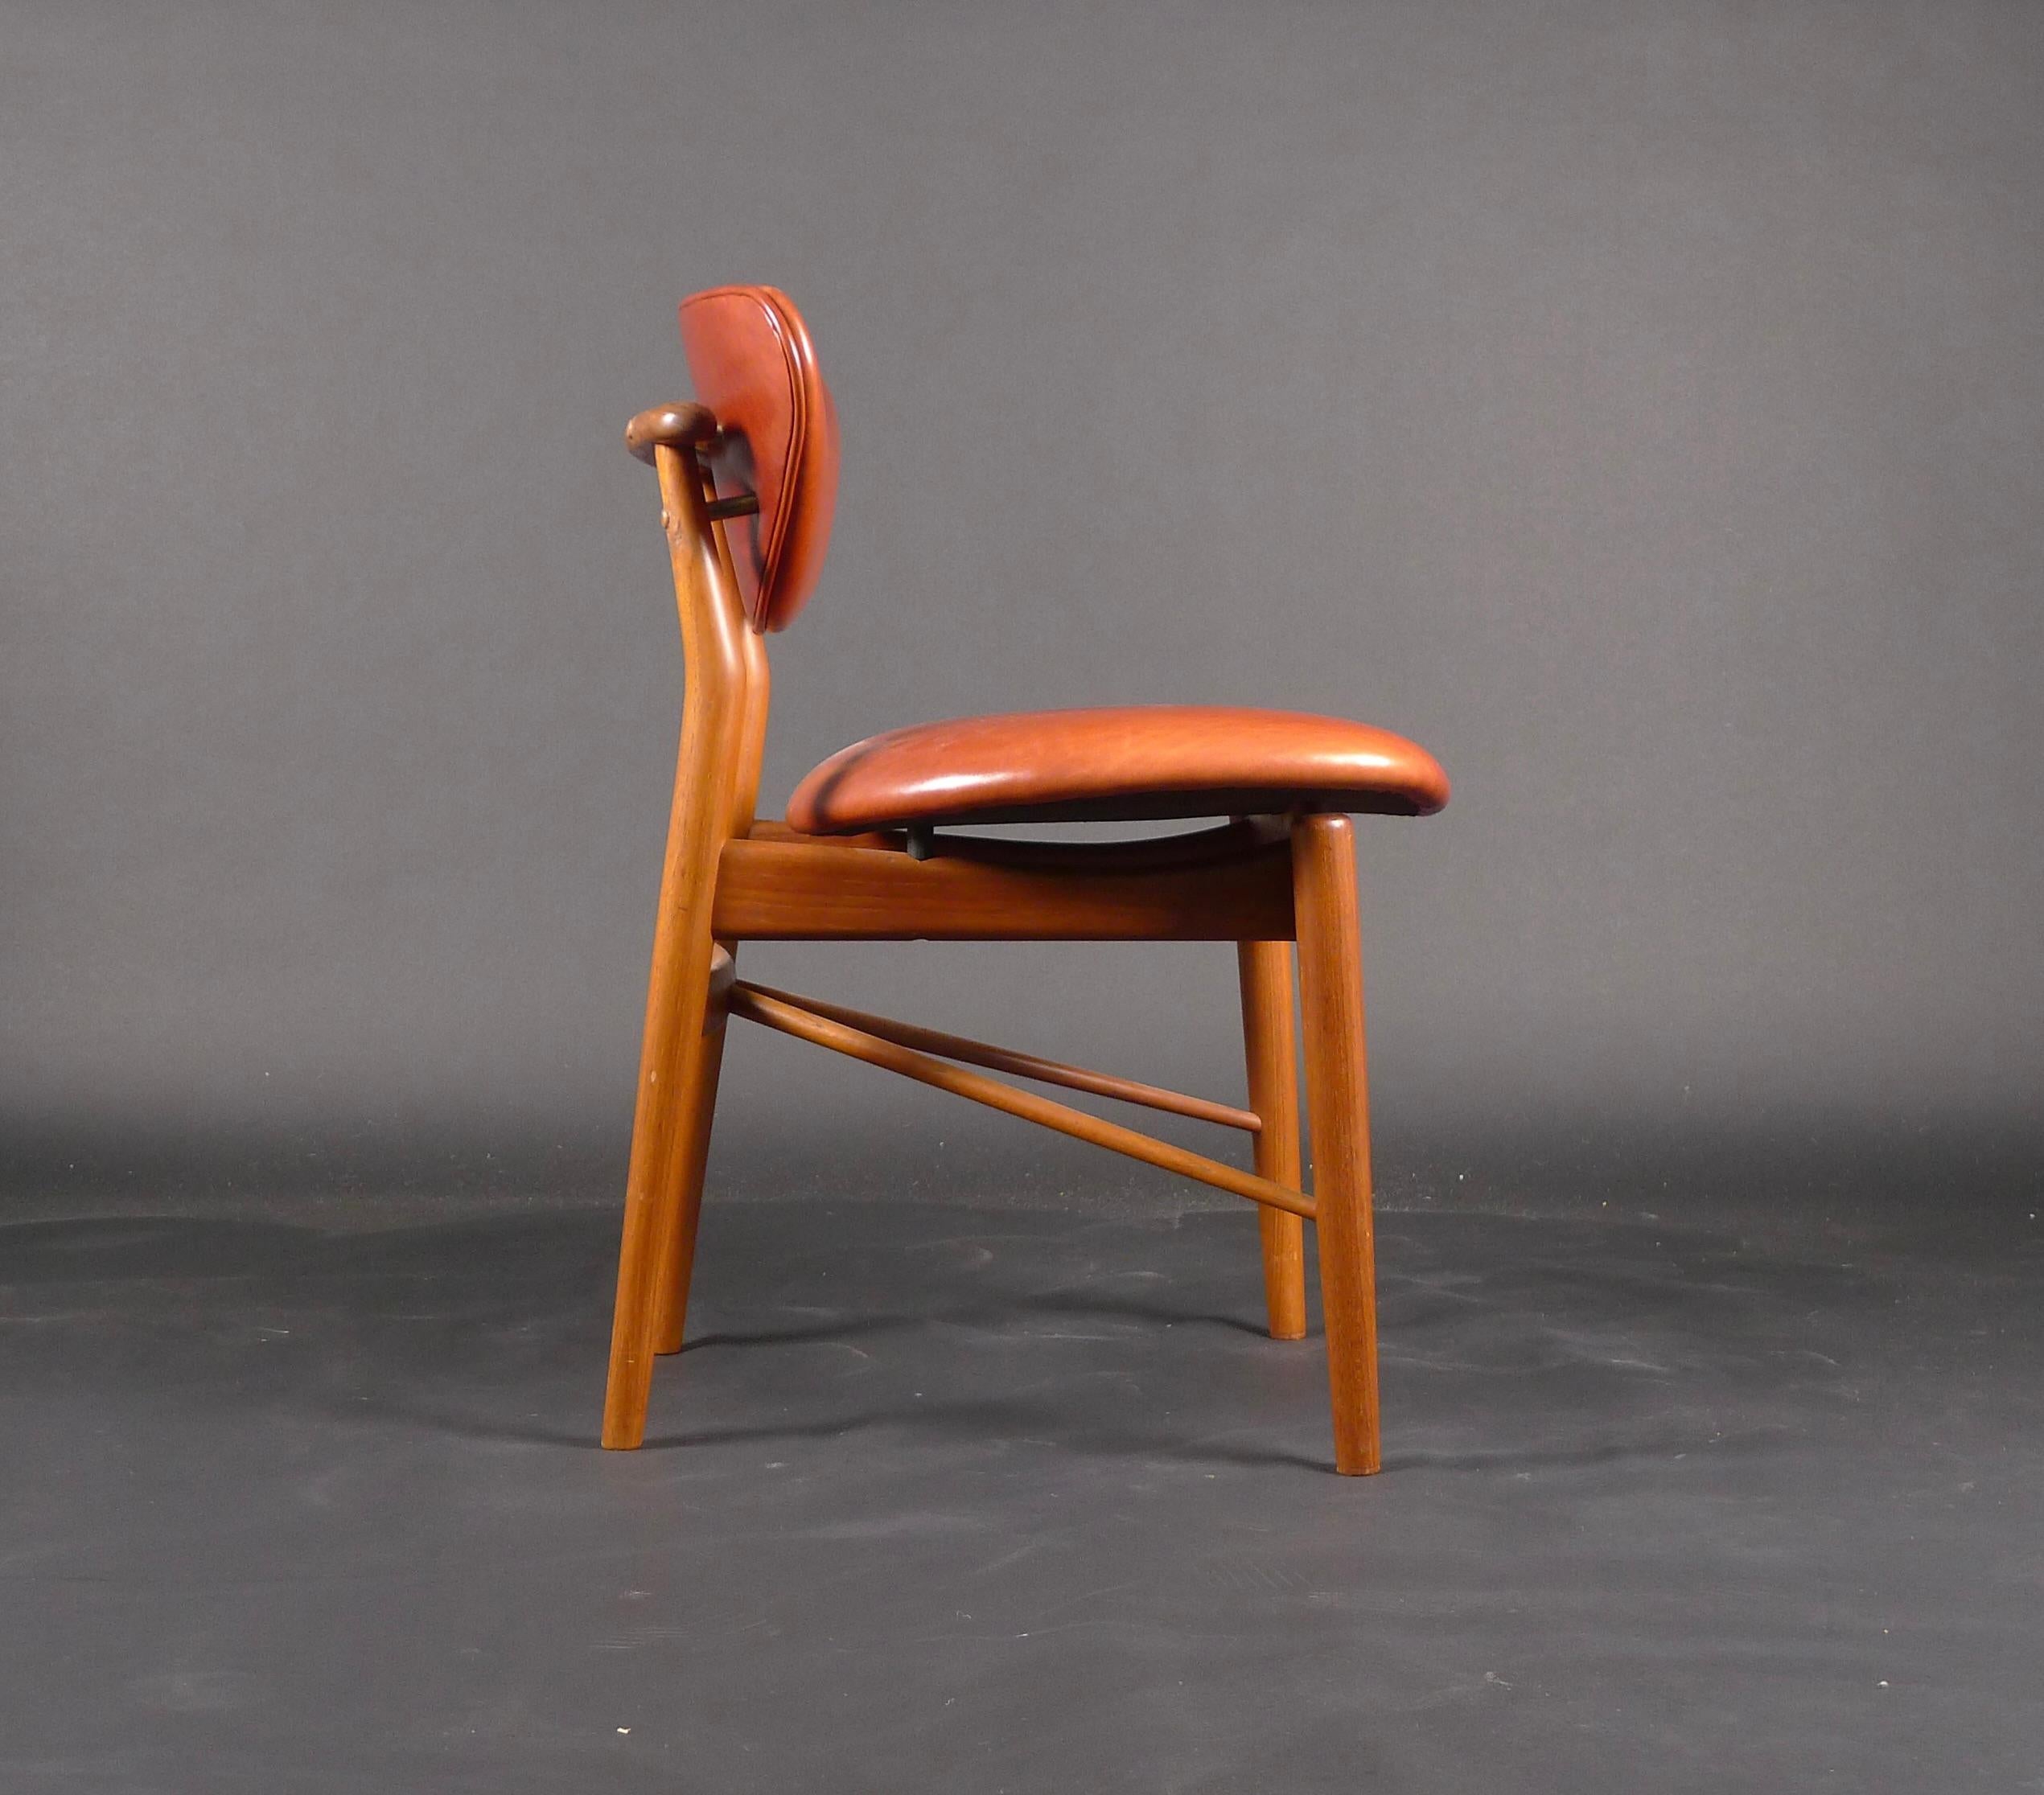 Finn Juhl, chaise 108 en teck, 1946, réalisée par Niels Vodder, Copenhague, estampillée

Il s'agit d'une chaise originale précoce, fabriquée par l'ébéniste Niels Vodder à Copenhague et portant la marque estampillée (voir image).  L'état est très